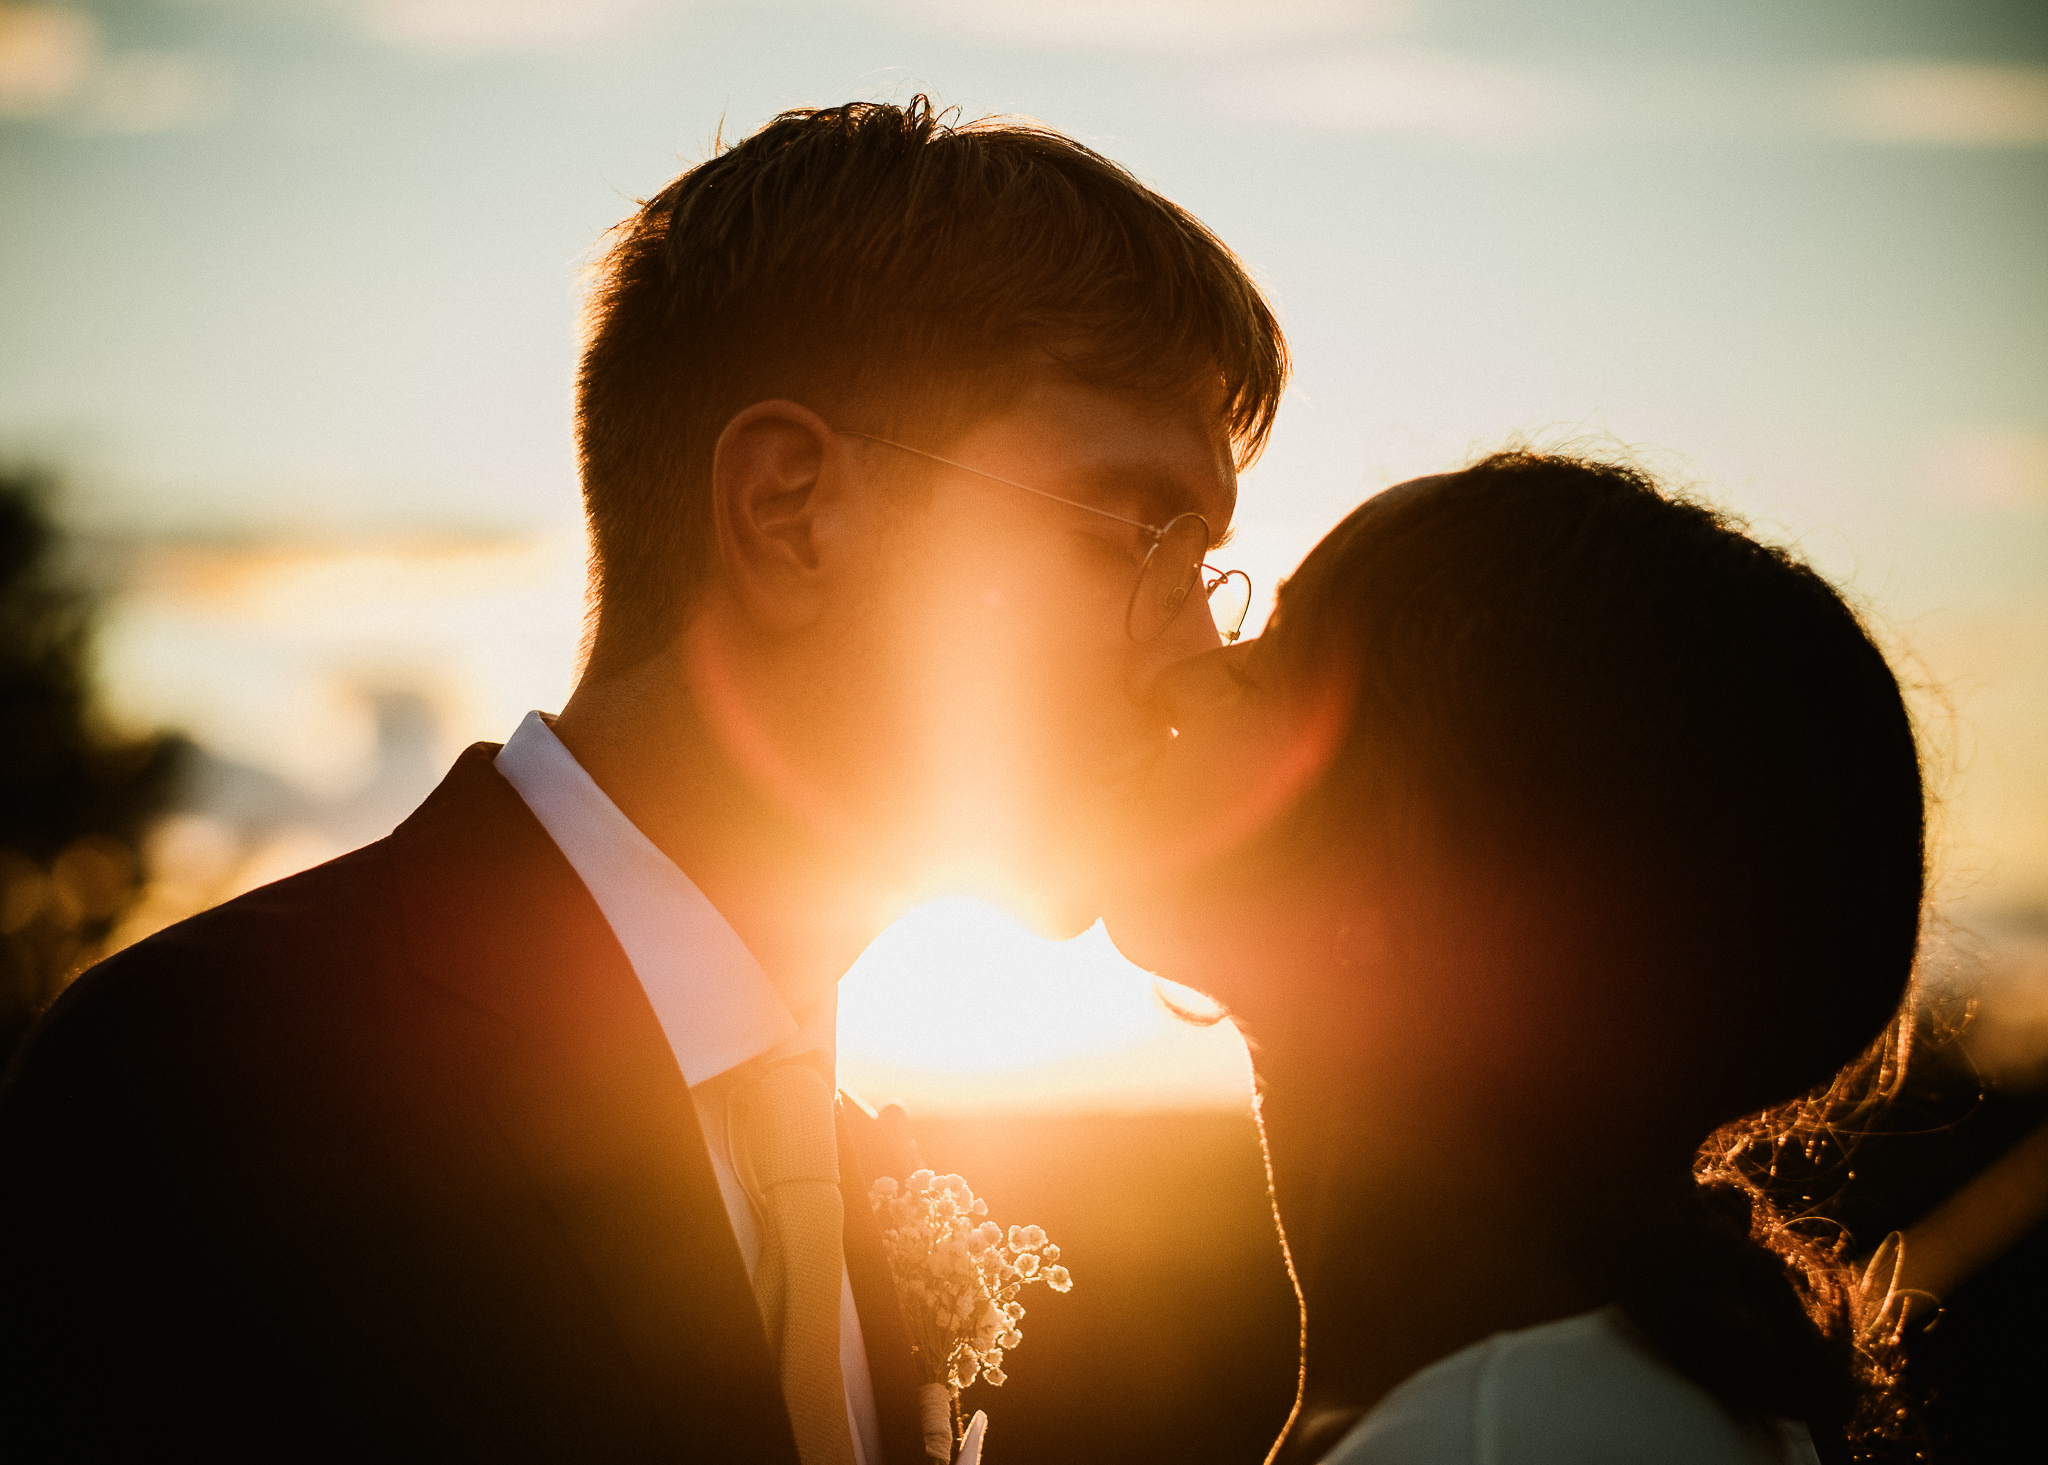 Bröllopsfotografering i solnedgången - Golden hour - av bröllopsfotograf Johan Lindqvist i Eksjö och Nässjö